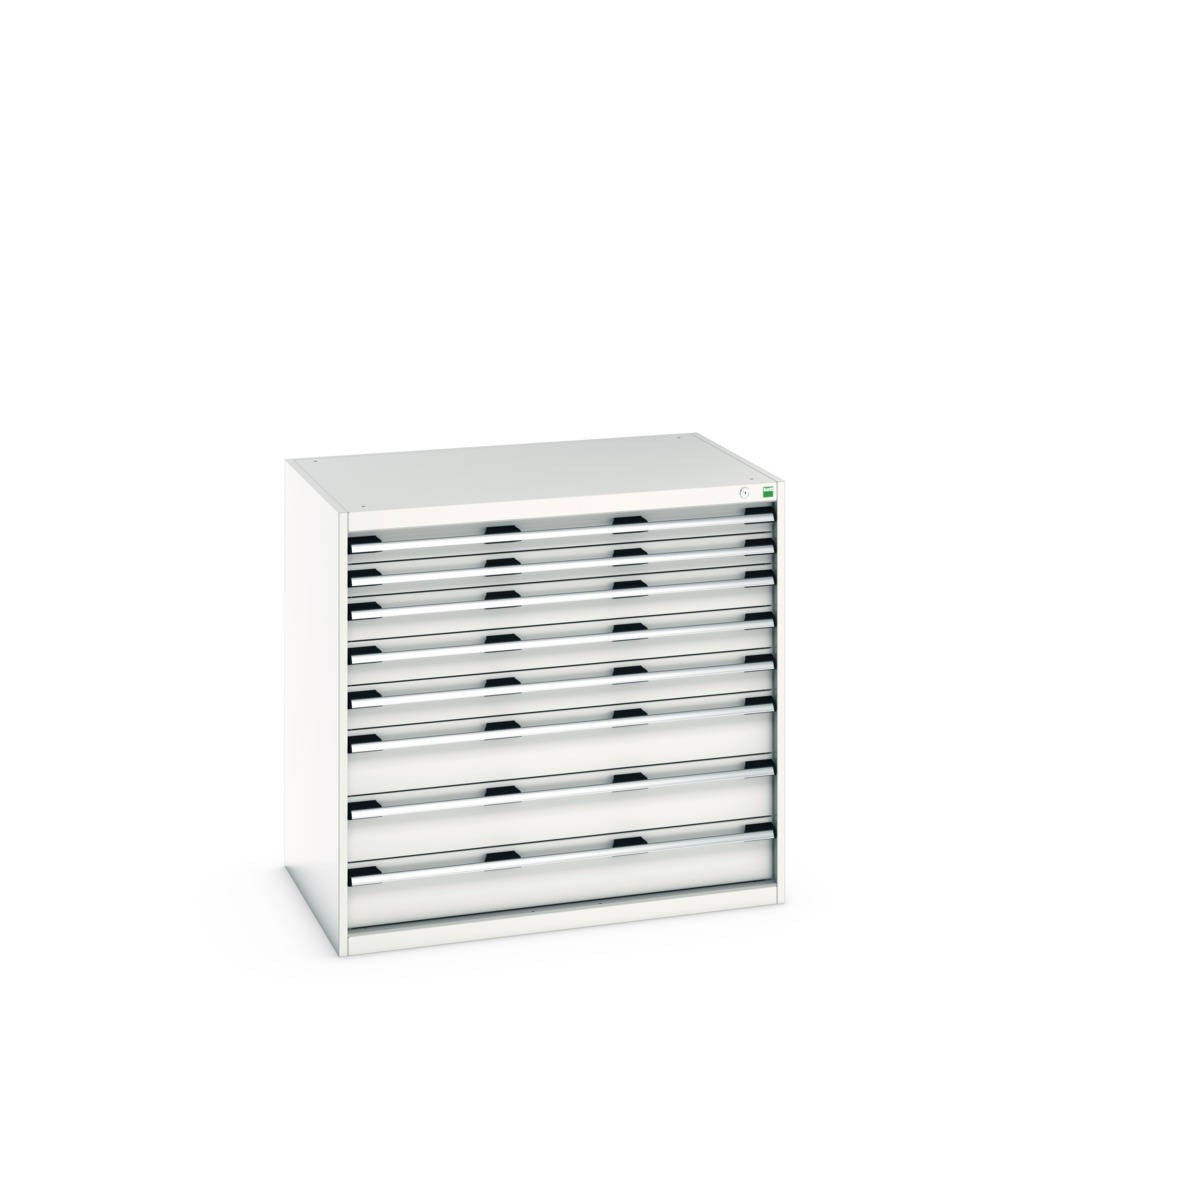 40029025.16V - cubio drawer cabinet